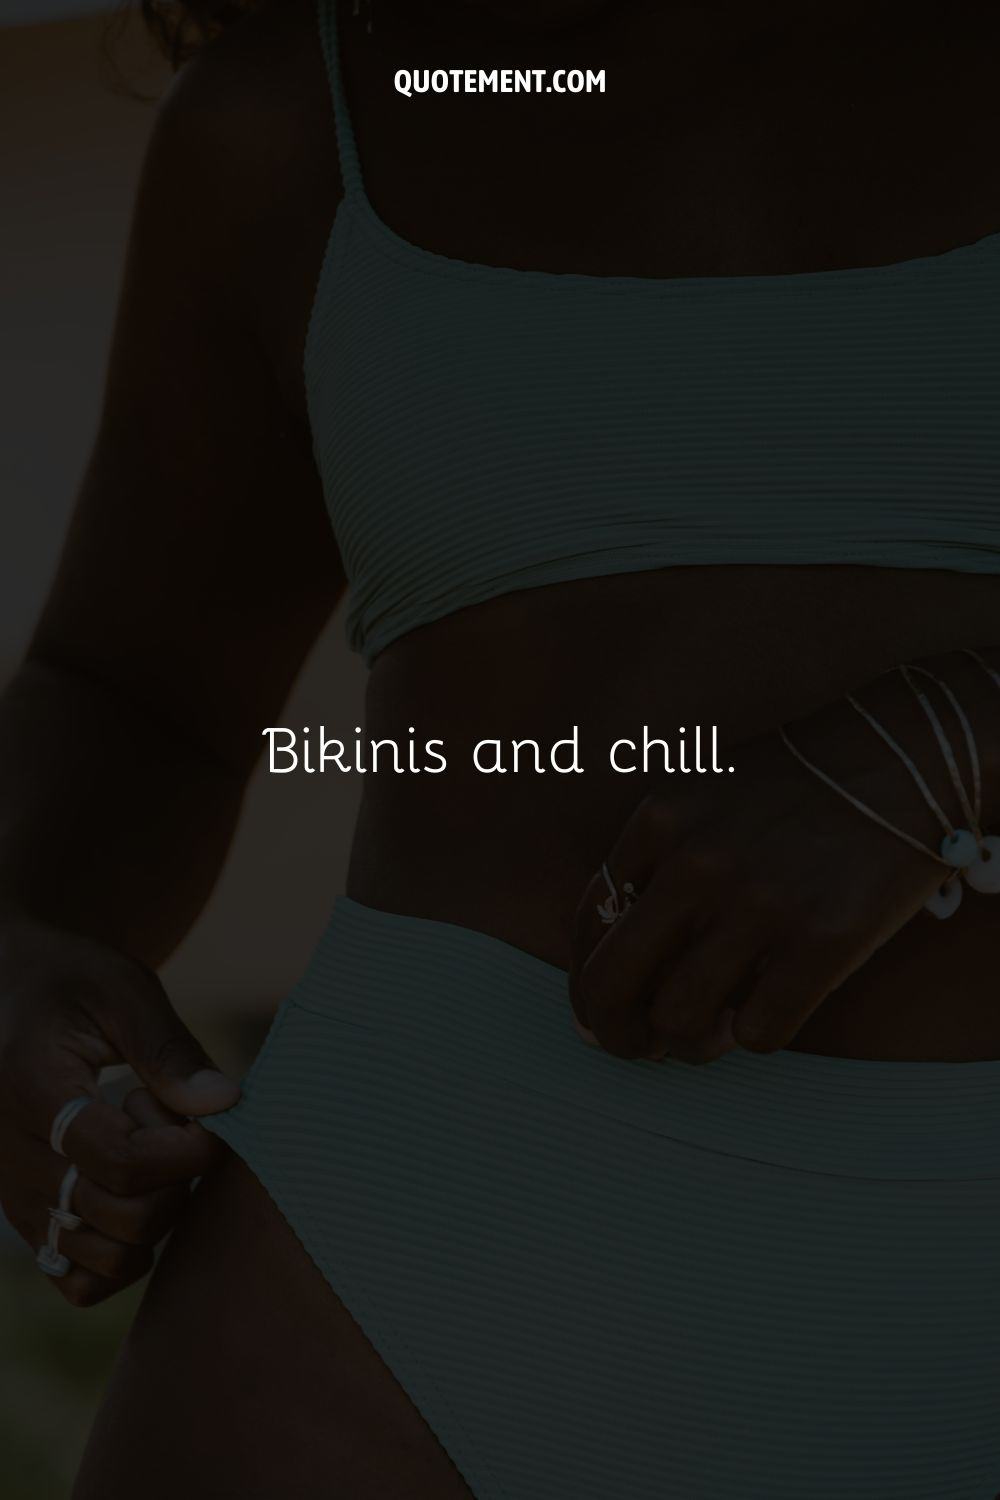 Photo of a tanned body in a white bikini representing a short bikini caption.
